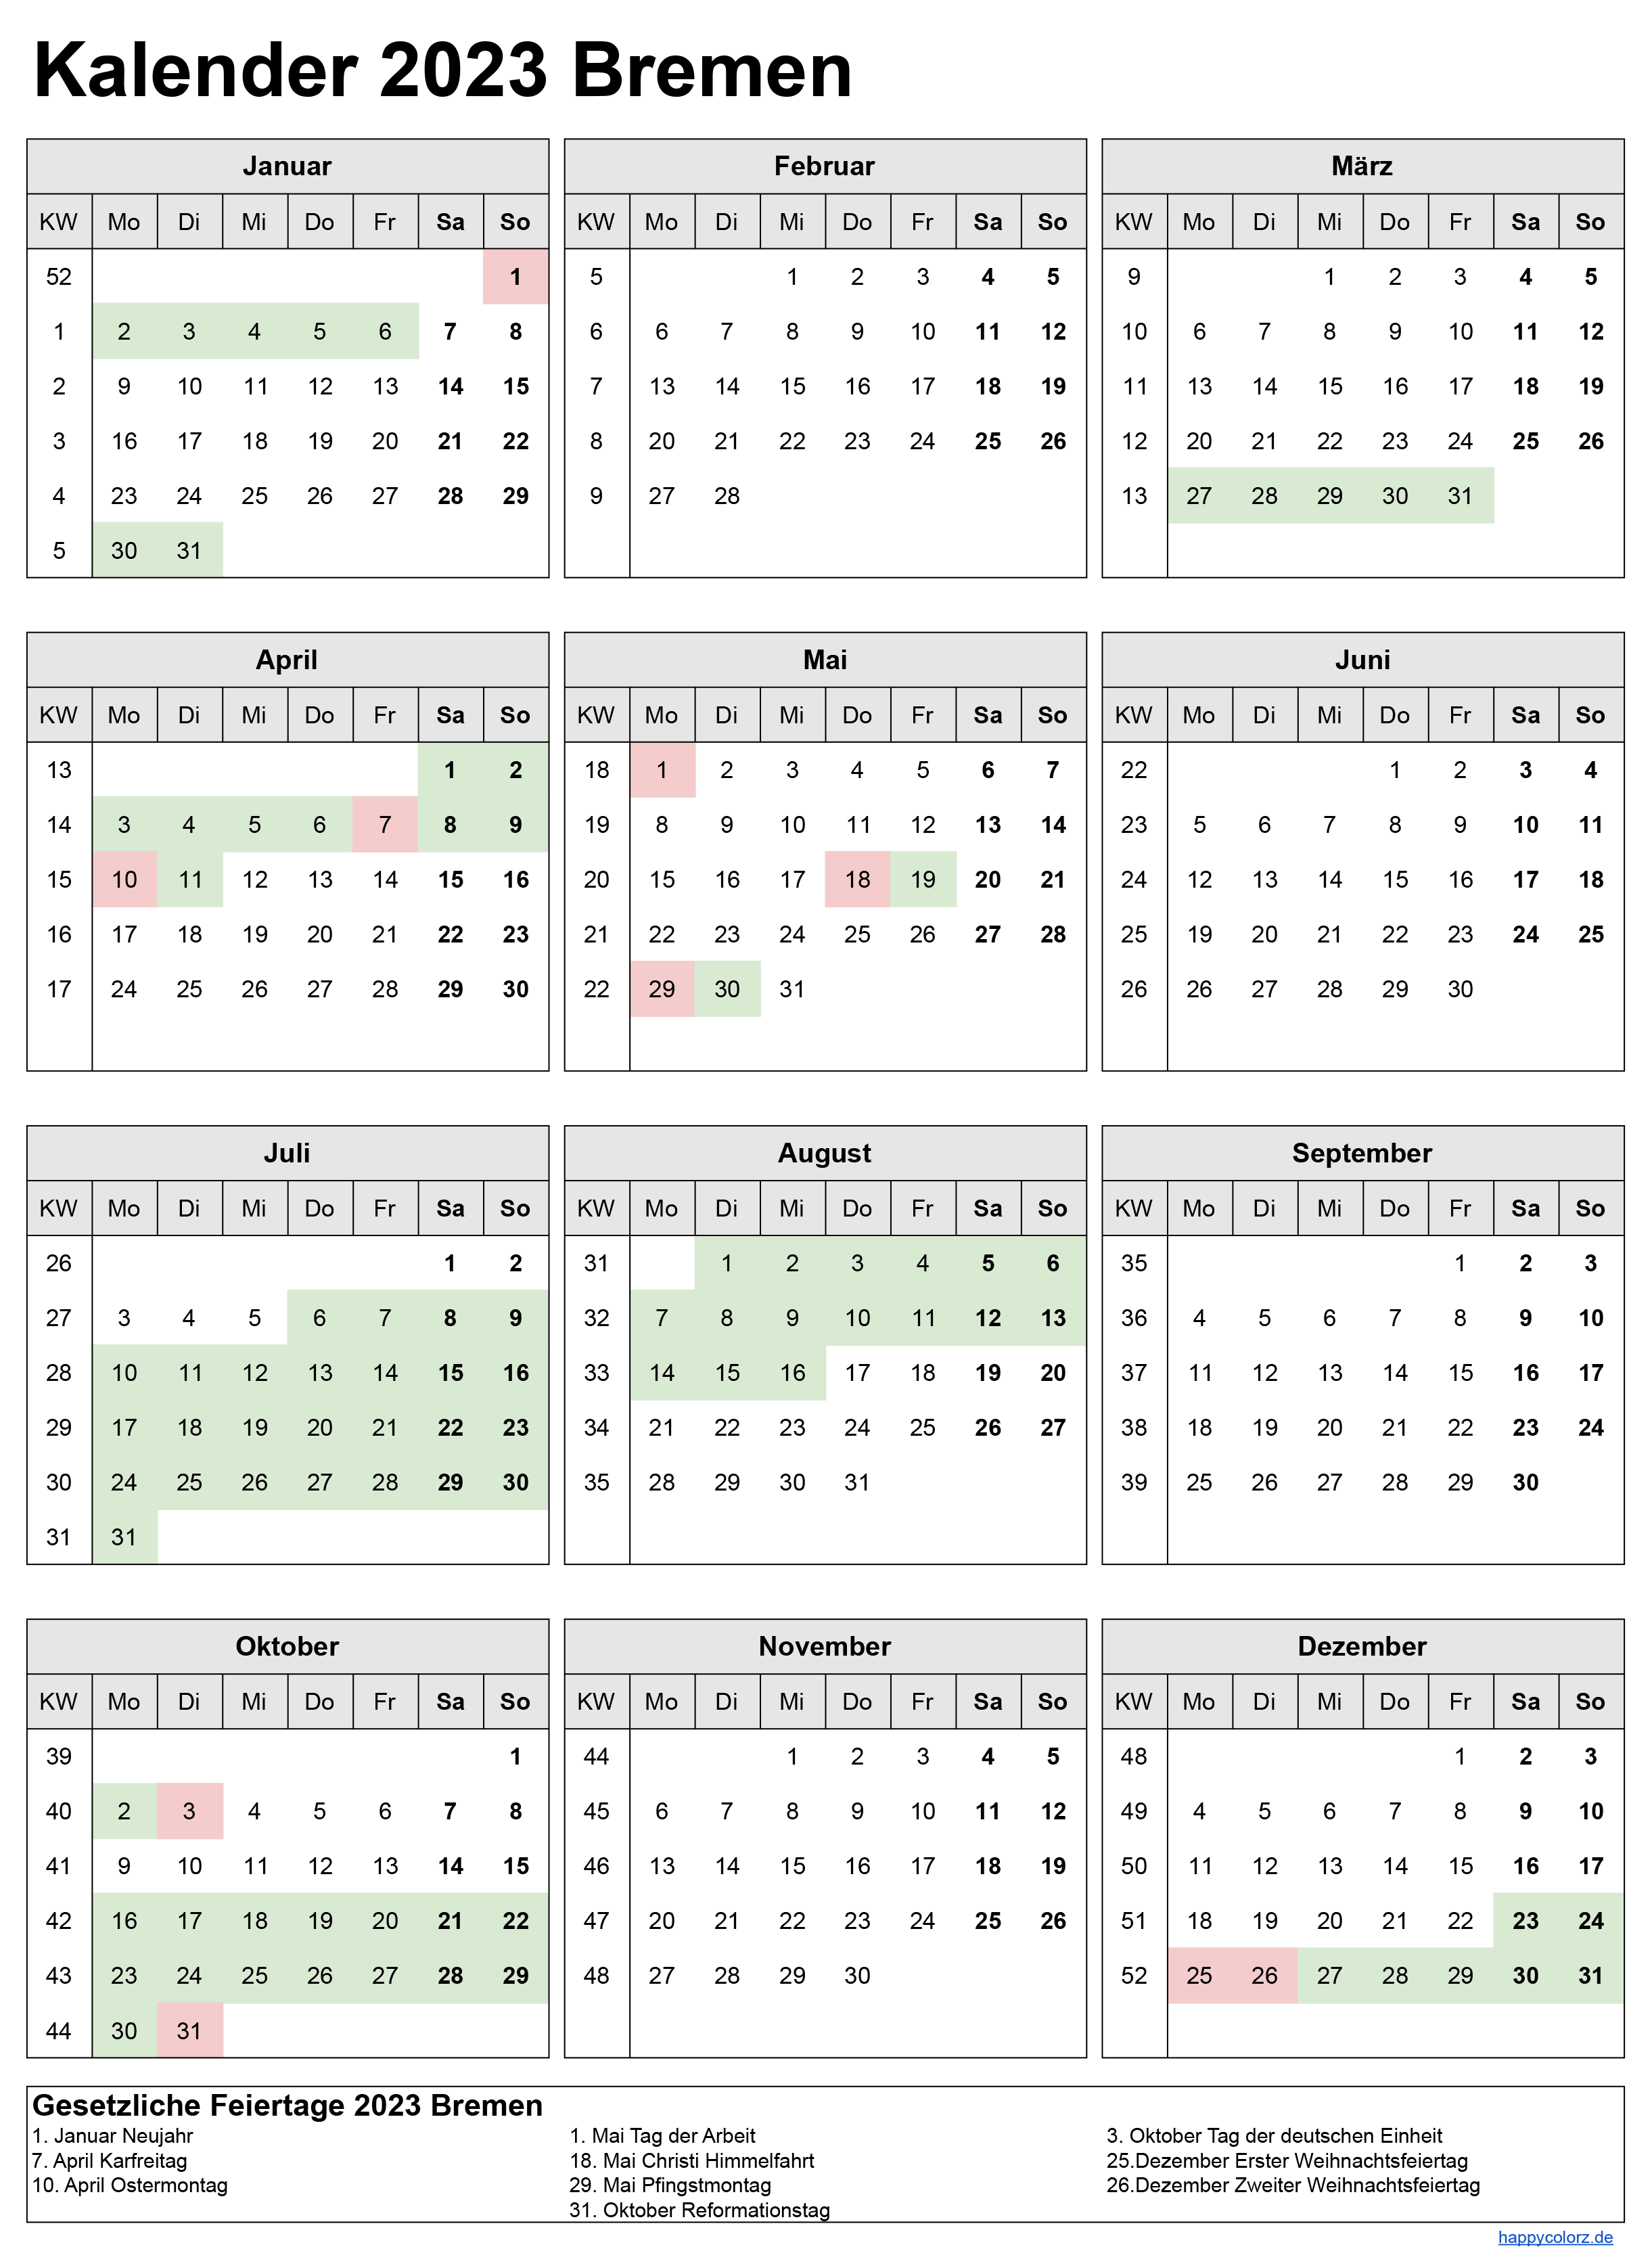 Kalender 2023 Bremen zum Ausdrucken